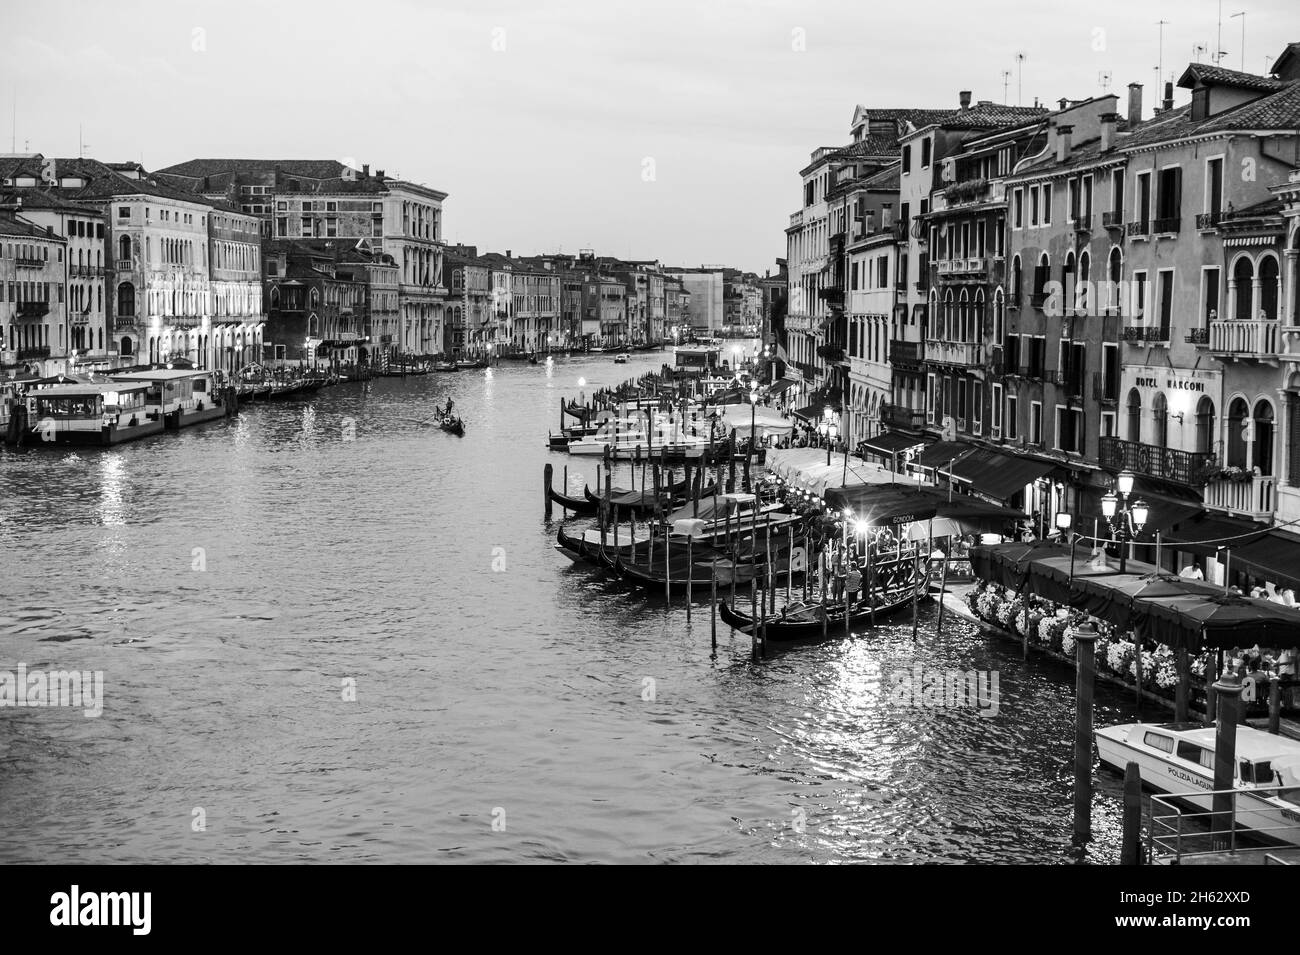 Gebäude Fassaden, Boote und Gondeln auf dem Canal grande von der rialtobrücke (ponte di rialto), venedig, italien Stockfoto